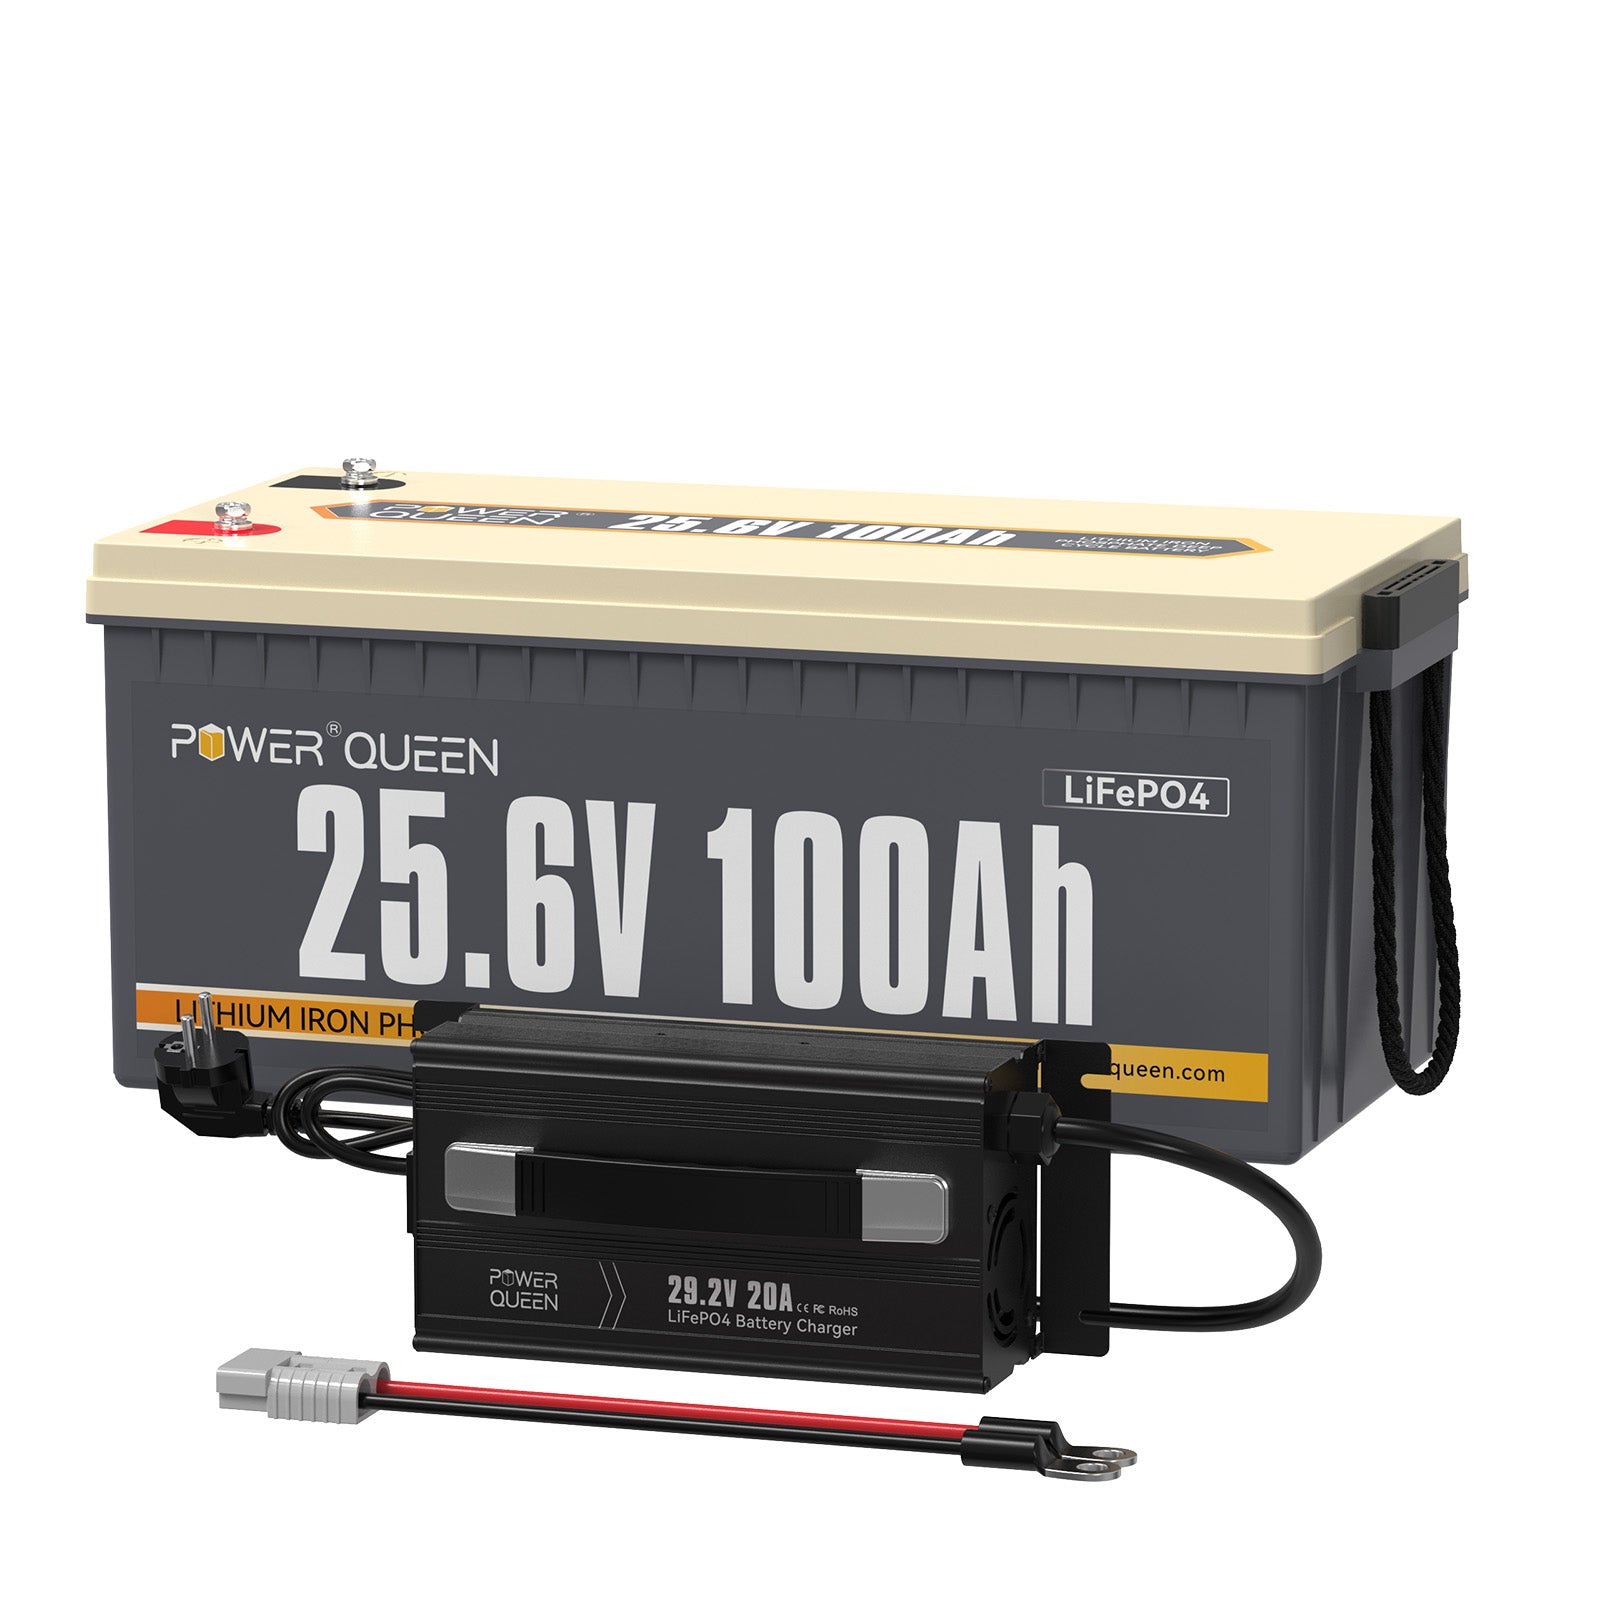 【0% IVA】Batería LiFePO4 Power Queen de 25,6 V y 100 Ah, BMS integrado de 100 A